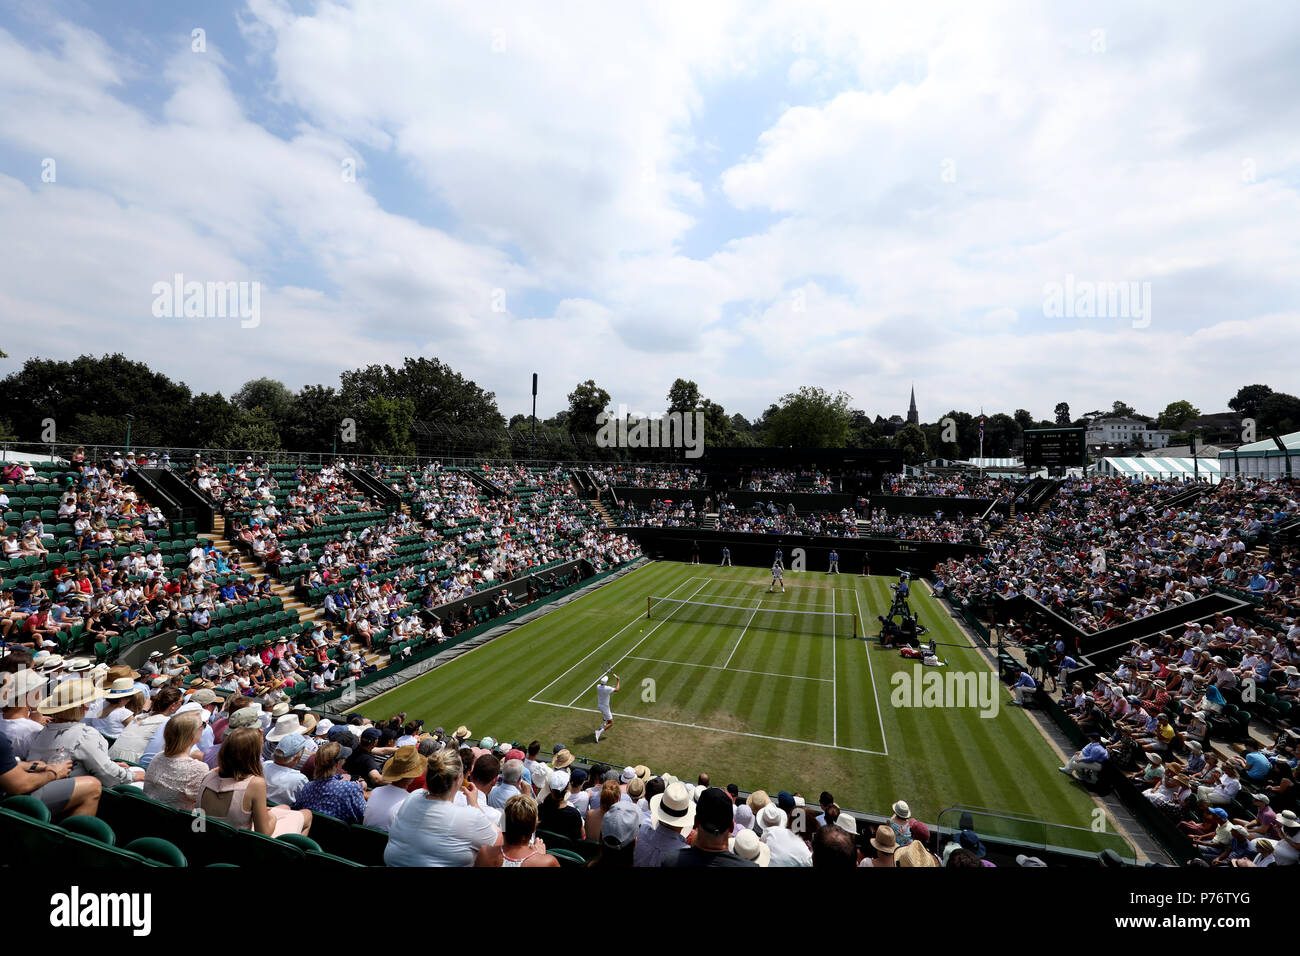 Une vue générale de l'action masculin sur cour 2 entre John Millman et Milos Raonic sur la troisième journée du tournoi de Wimbledon à l'All England Lawn Tennis et croquet Club, Wimbledon. Banque D'Images